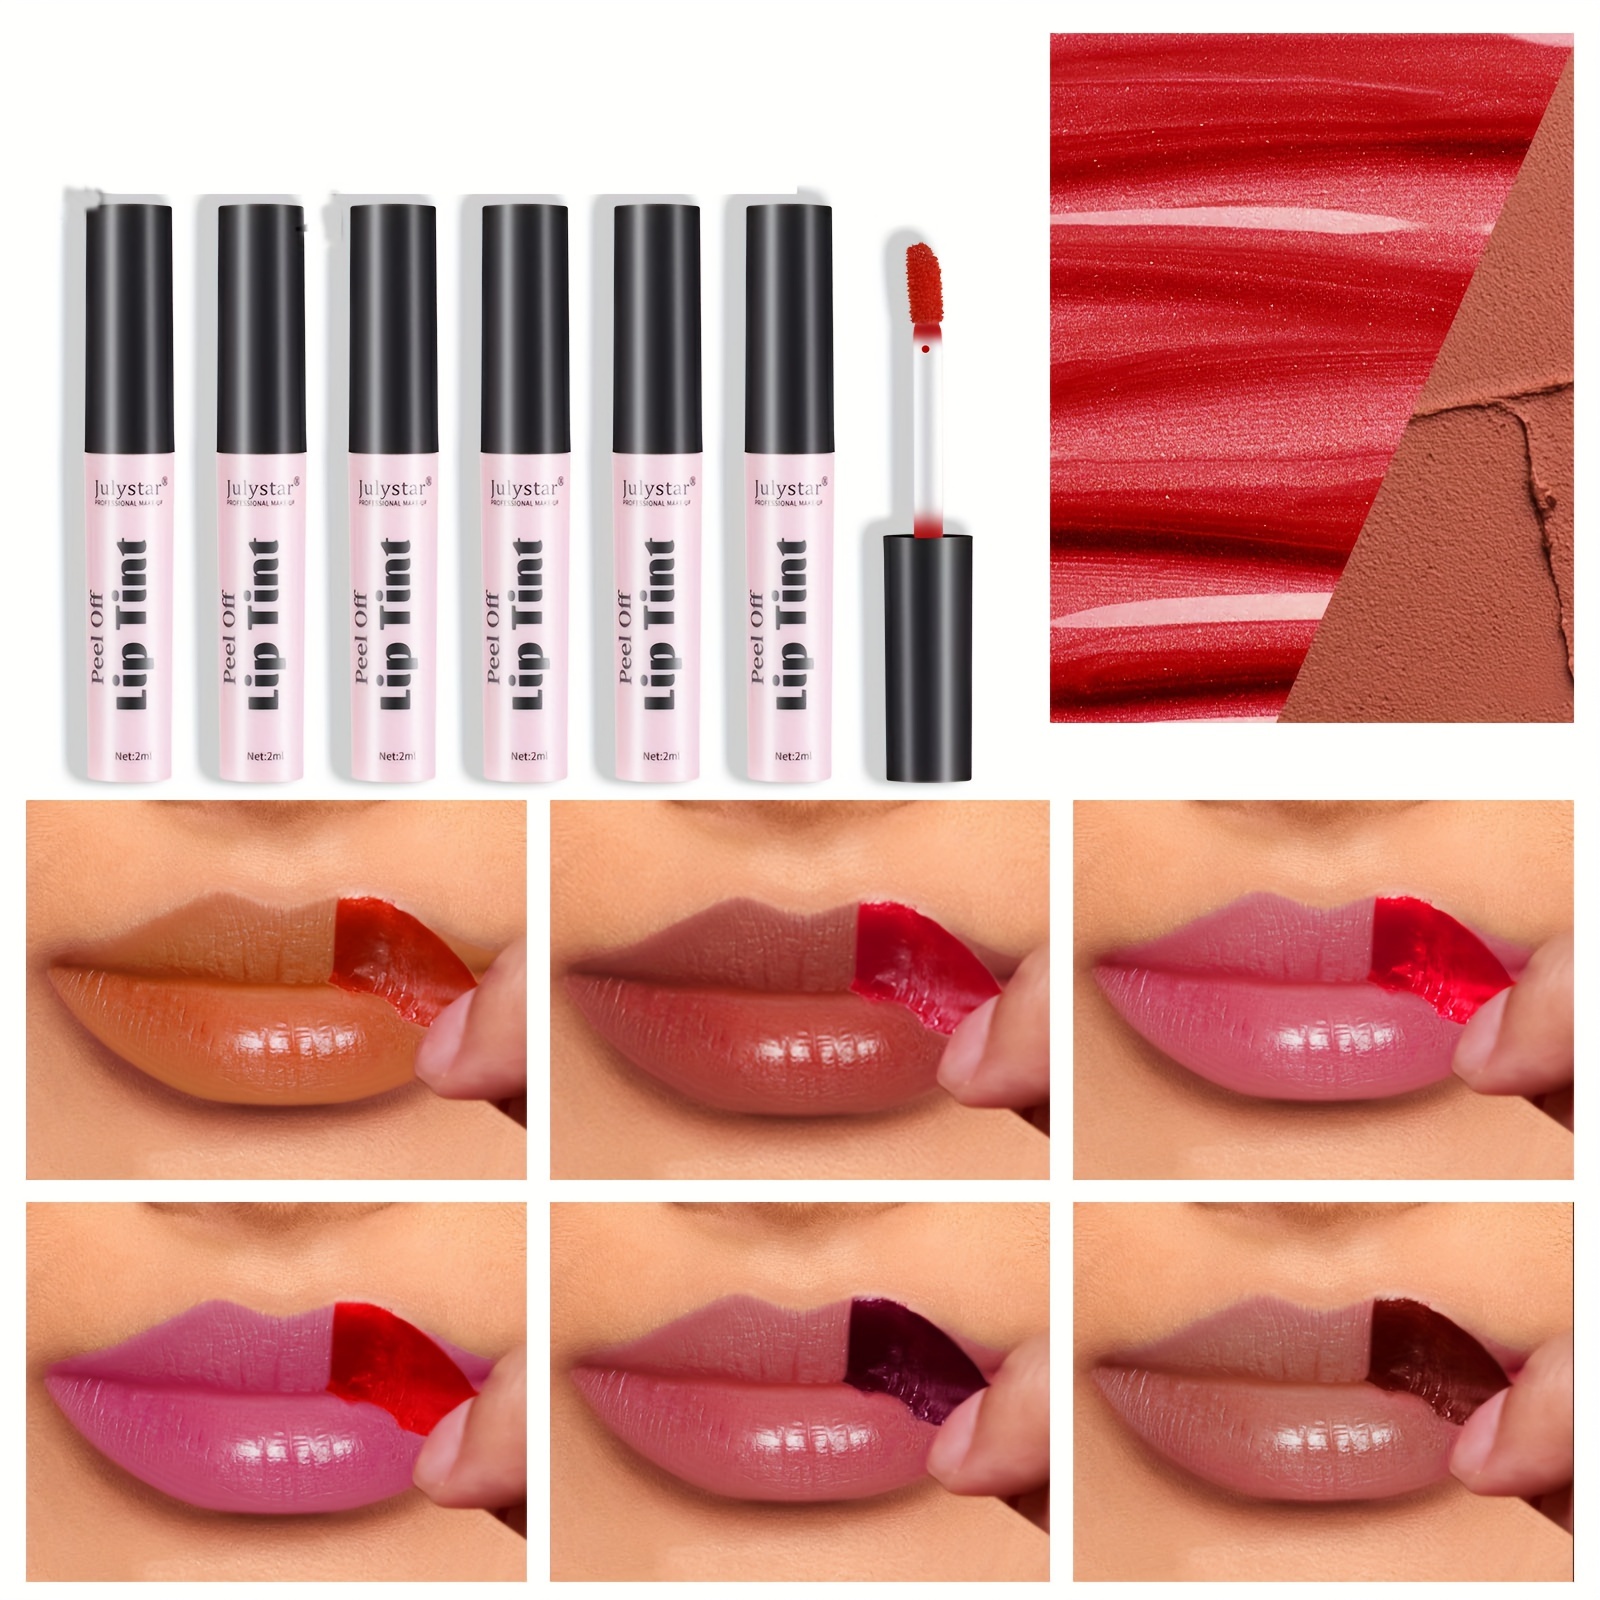 

Peel-off Lip Tint, Waterproof Lip Gloss, Long-lasting Natural Lip Stain, Non-smudge & Moisturizing Formula, Daily Natural Lip Makeup